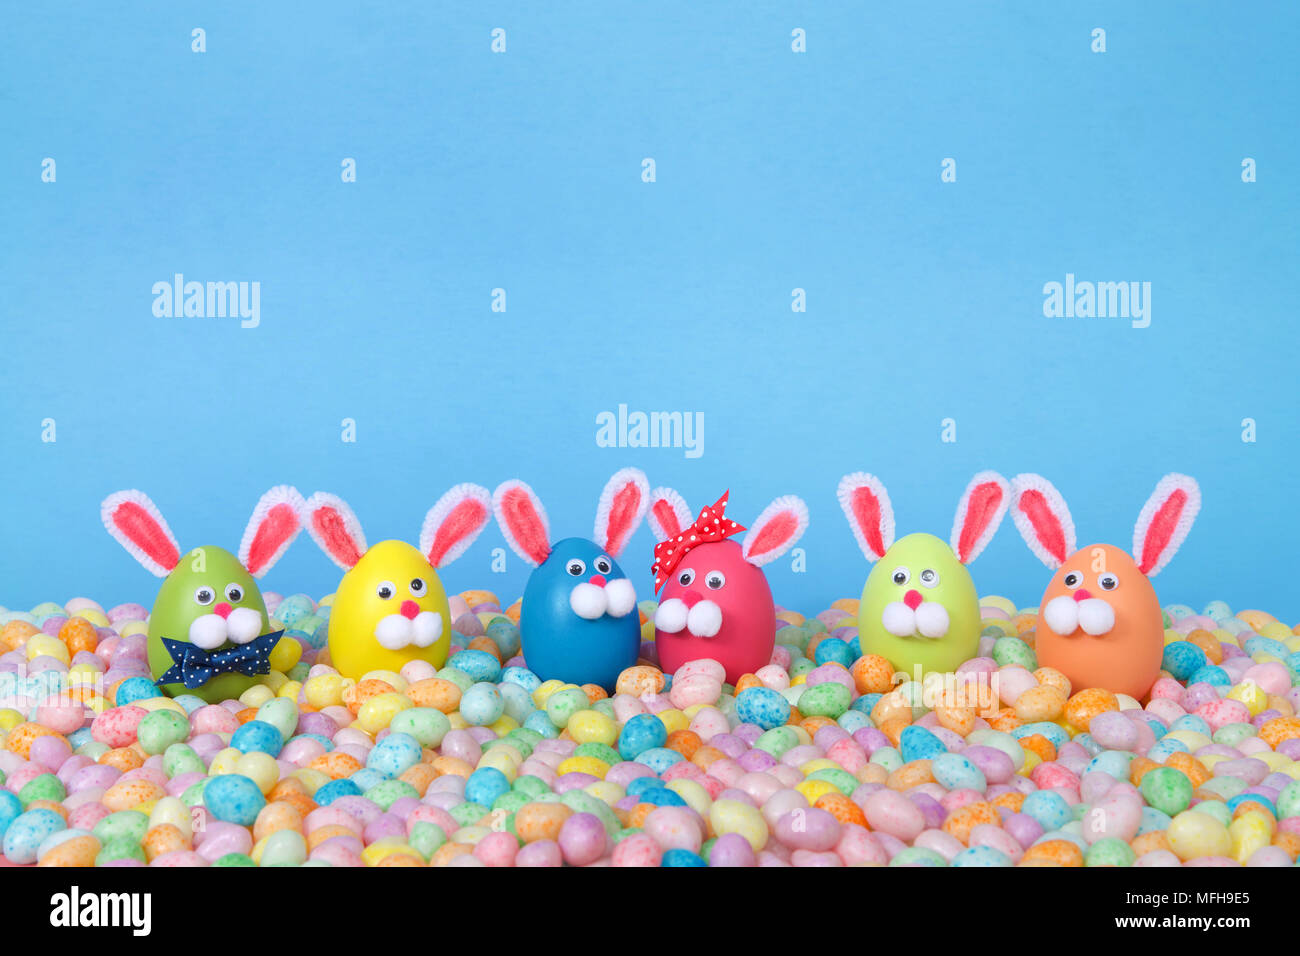 Conejitos de Pascua artesanales hechos de huevos de plástico de color pastel permanente Jelly Beans con un fondo de color azul claro. Pascua de diversión en línea con espacio de copia Foto de stock